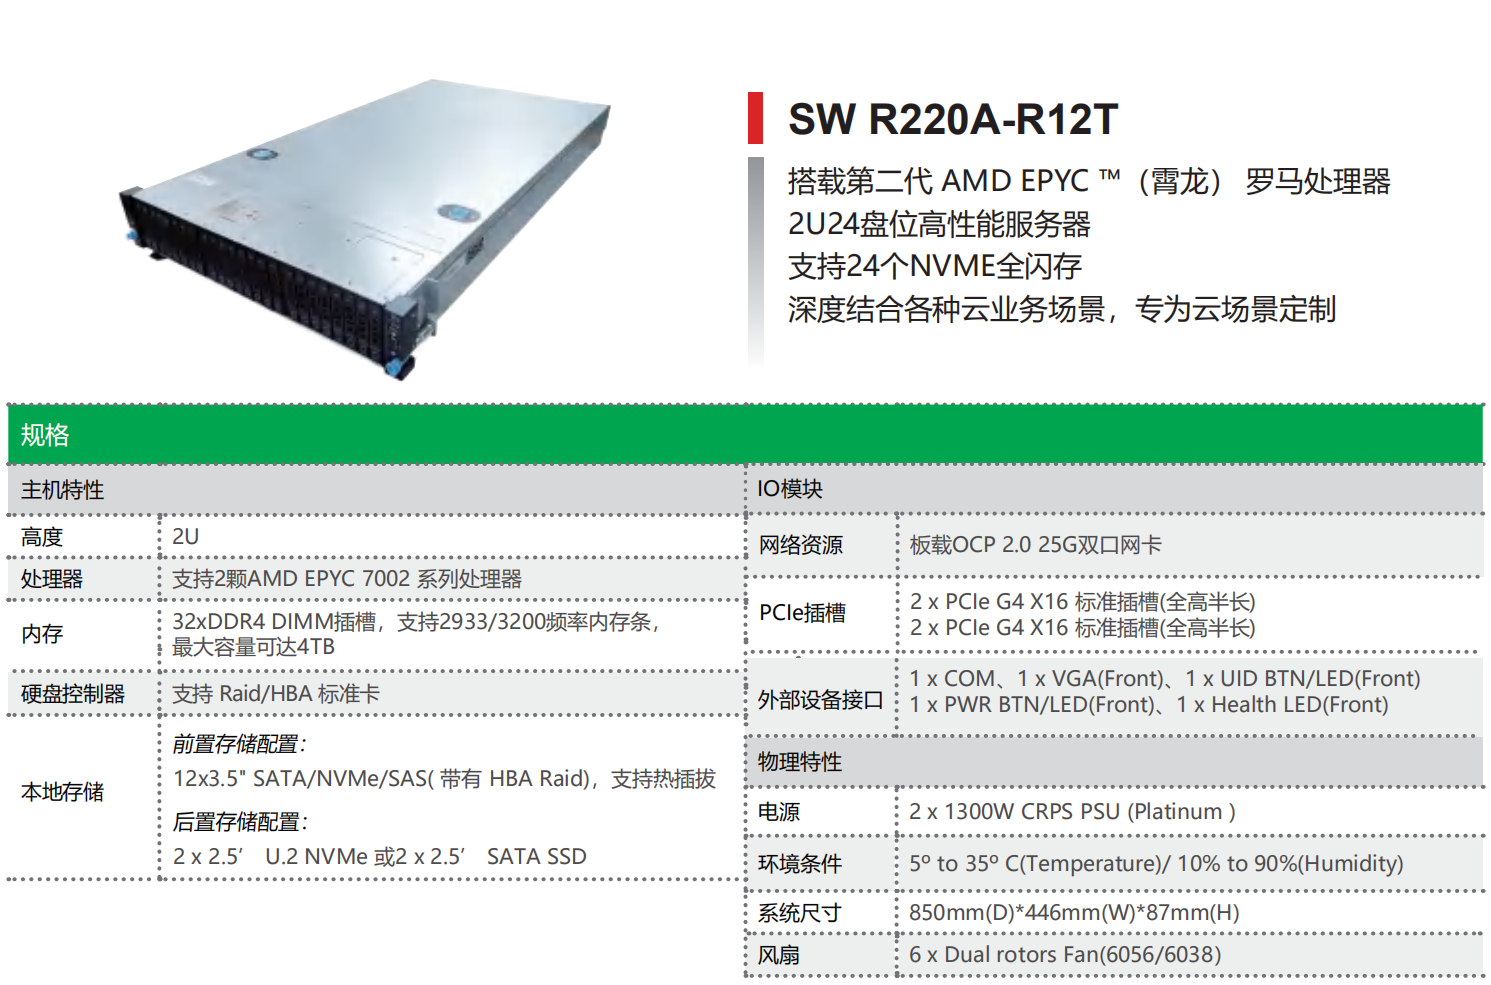 AMD 平台服务器—SW R220A-R12T(图1)